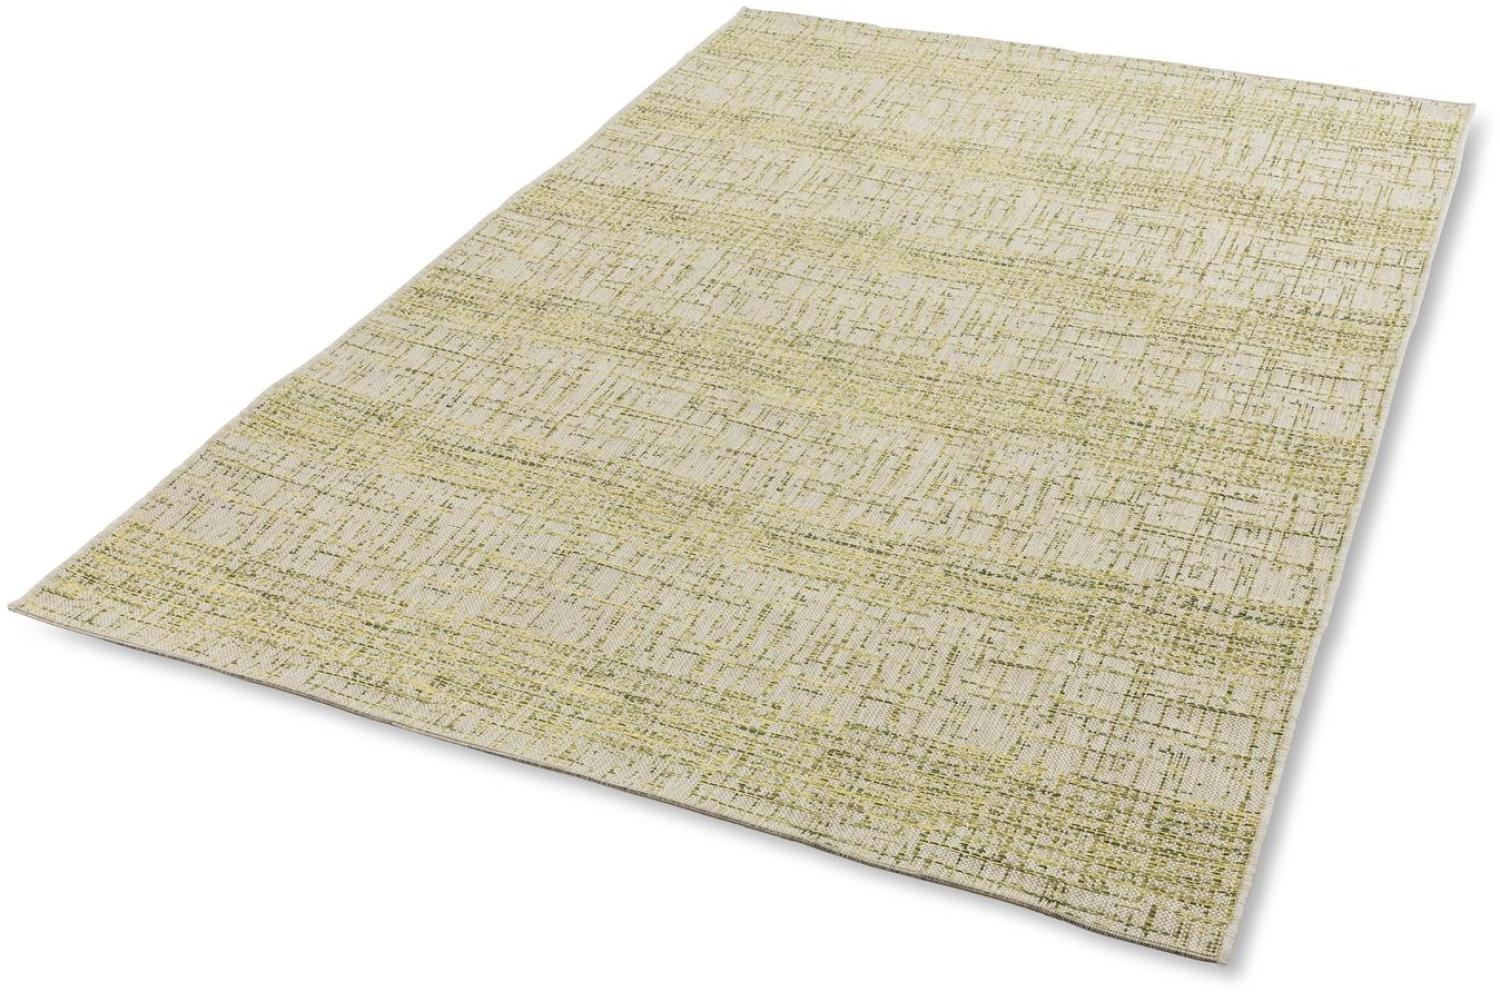 Teppich in grün aus 100% Polypropylen - 230x160x0,5cm (LxBxH) Bild 1